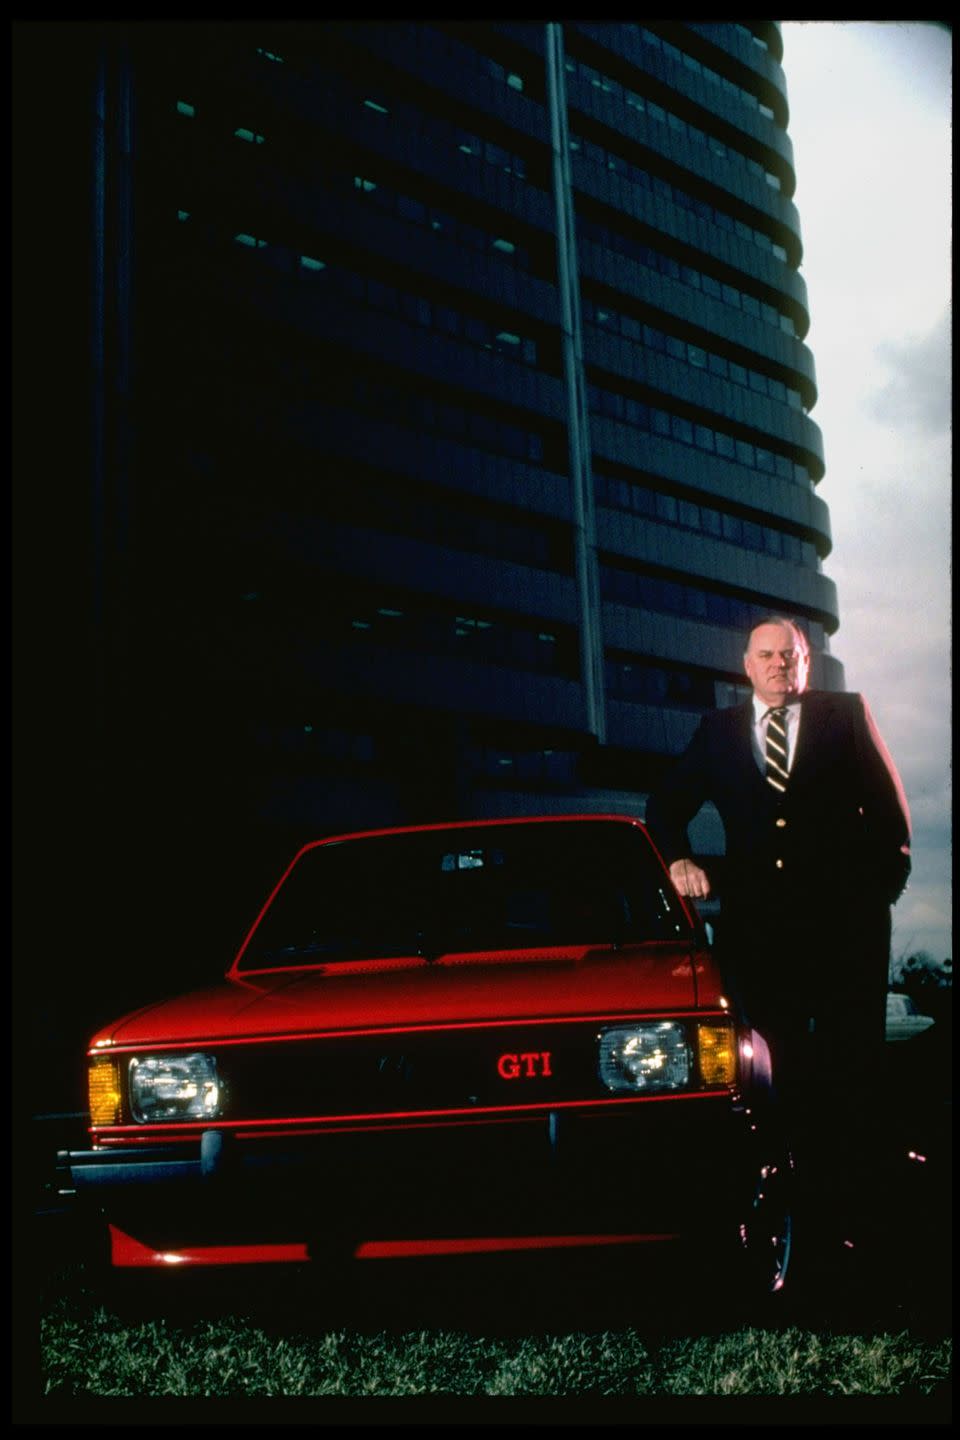 1983: VW GTI